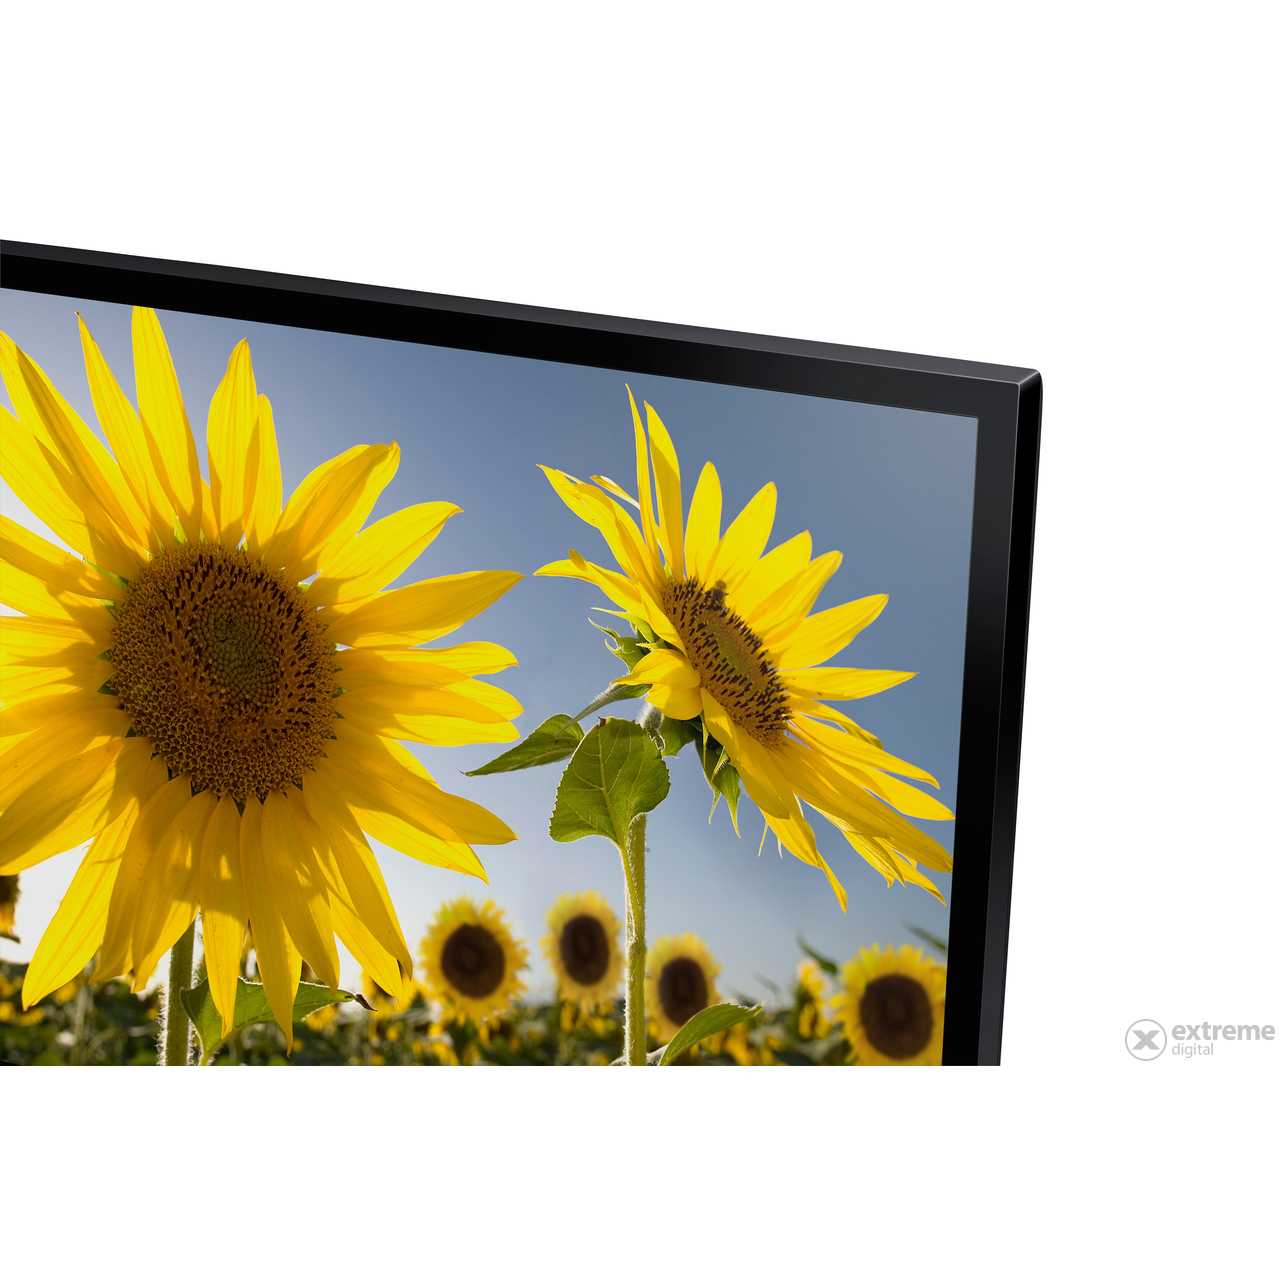 Samsung pe43h4000 - купить , скидки, цена, отзывы, обзор, характеристики - телевизоры